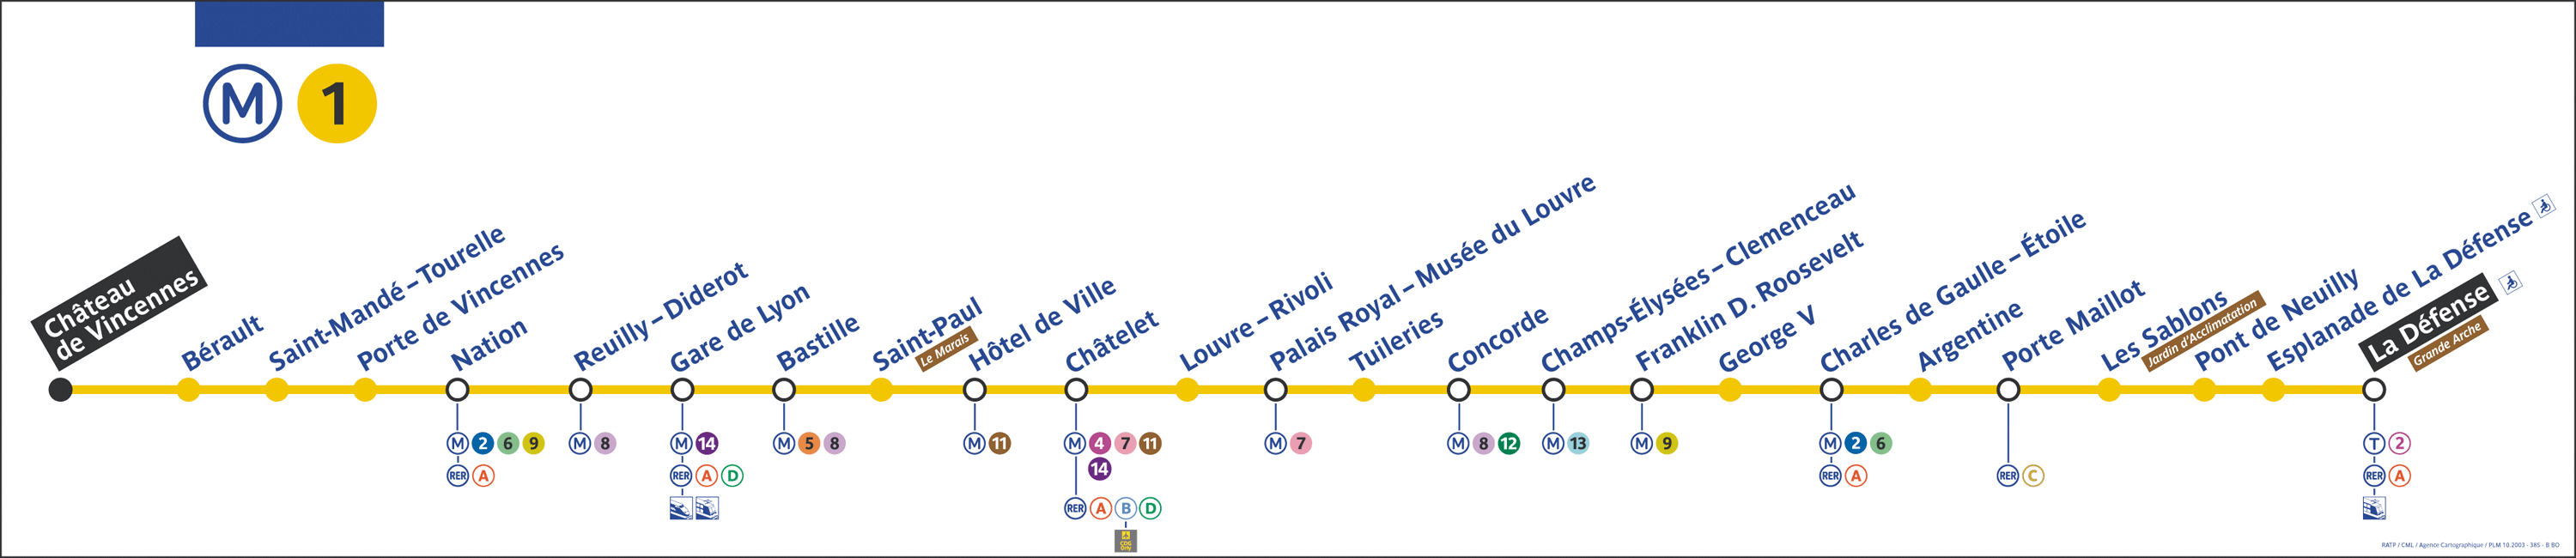 La ligne 1 du mÃ©tro de Paris est composÃ©e des stations suivantes :